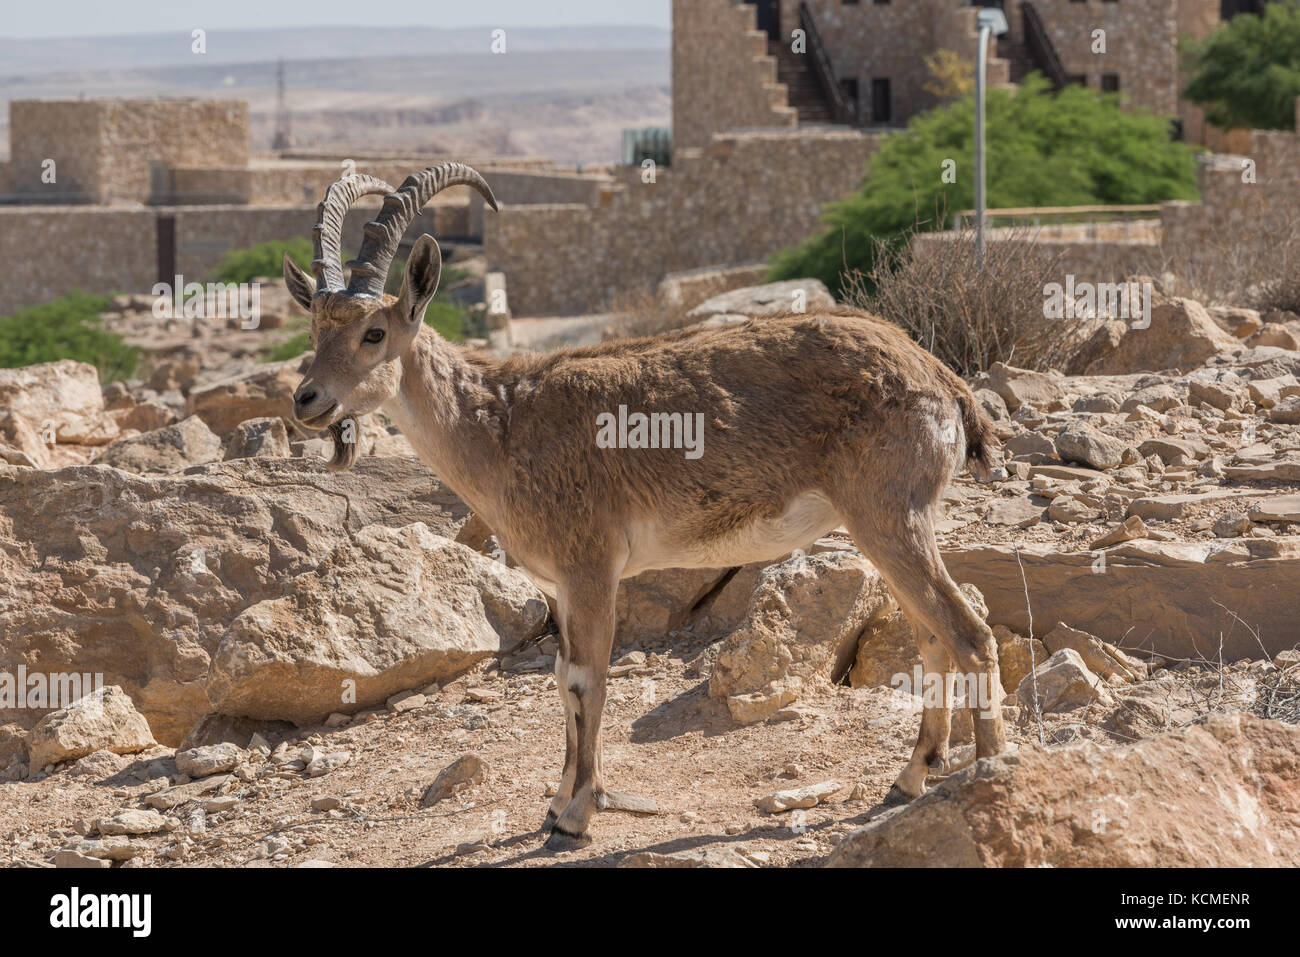 Les chèvres sauvages (Ibex de Nubie) à Mitzpe Ramon, Néguev, Israël Banque D'Images